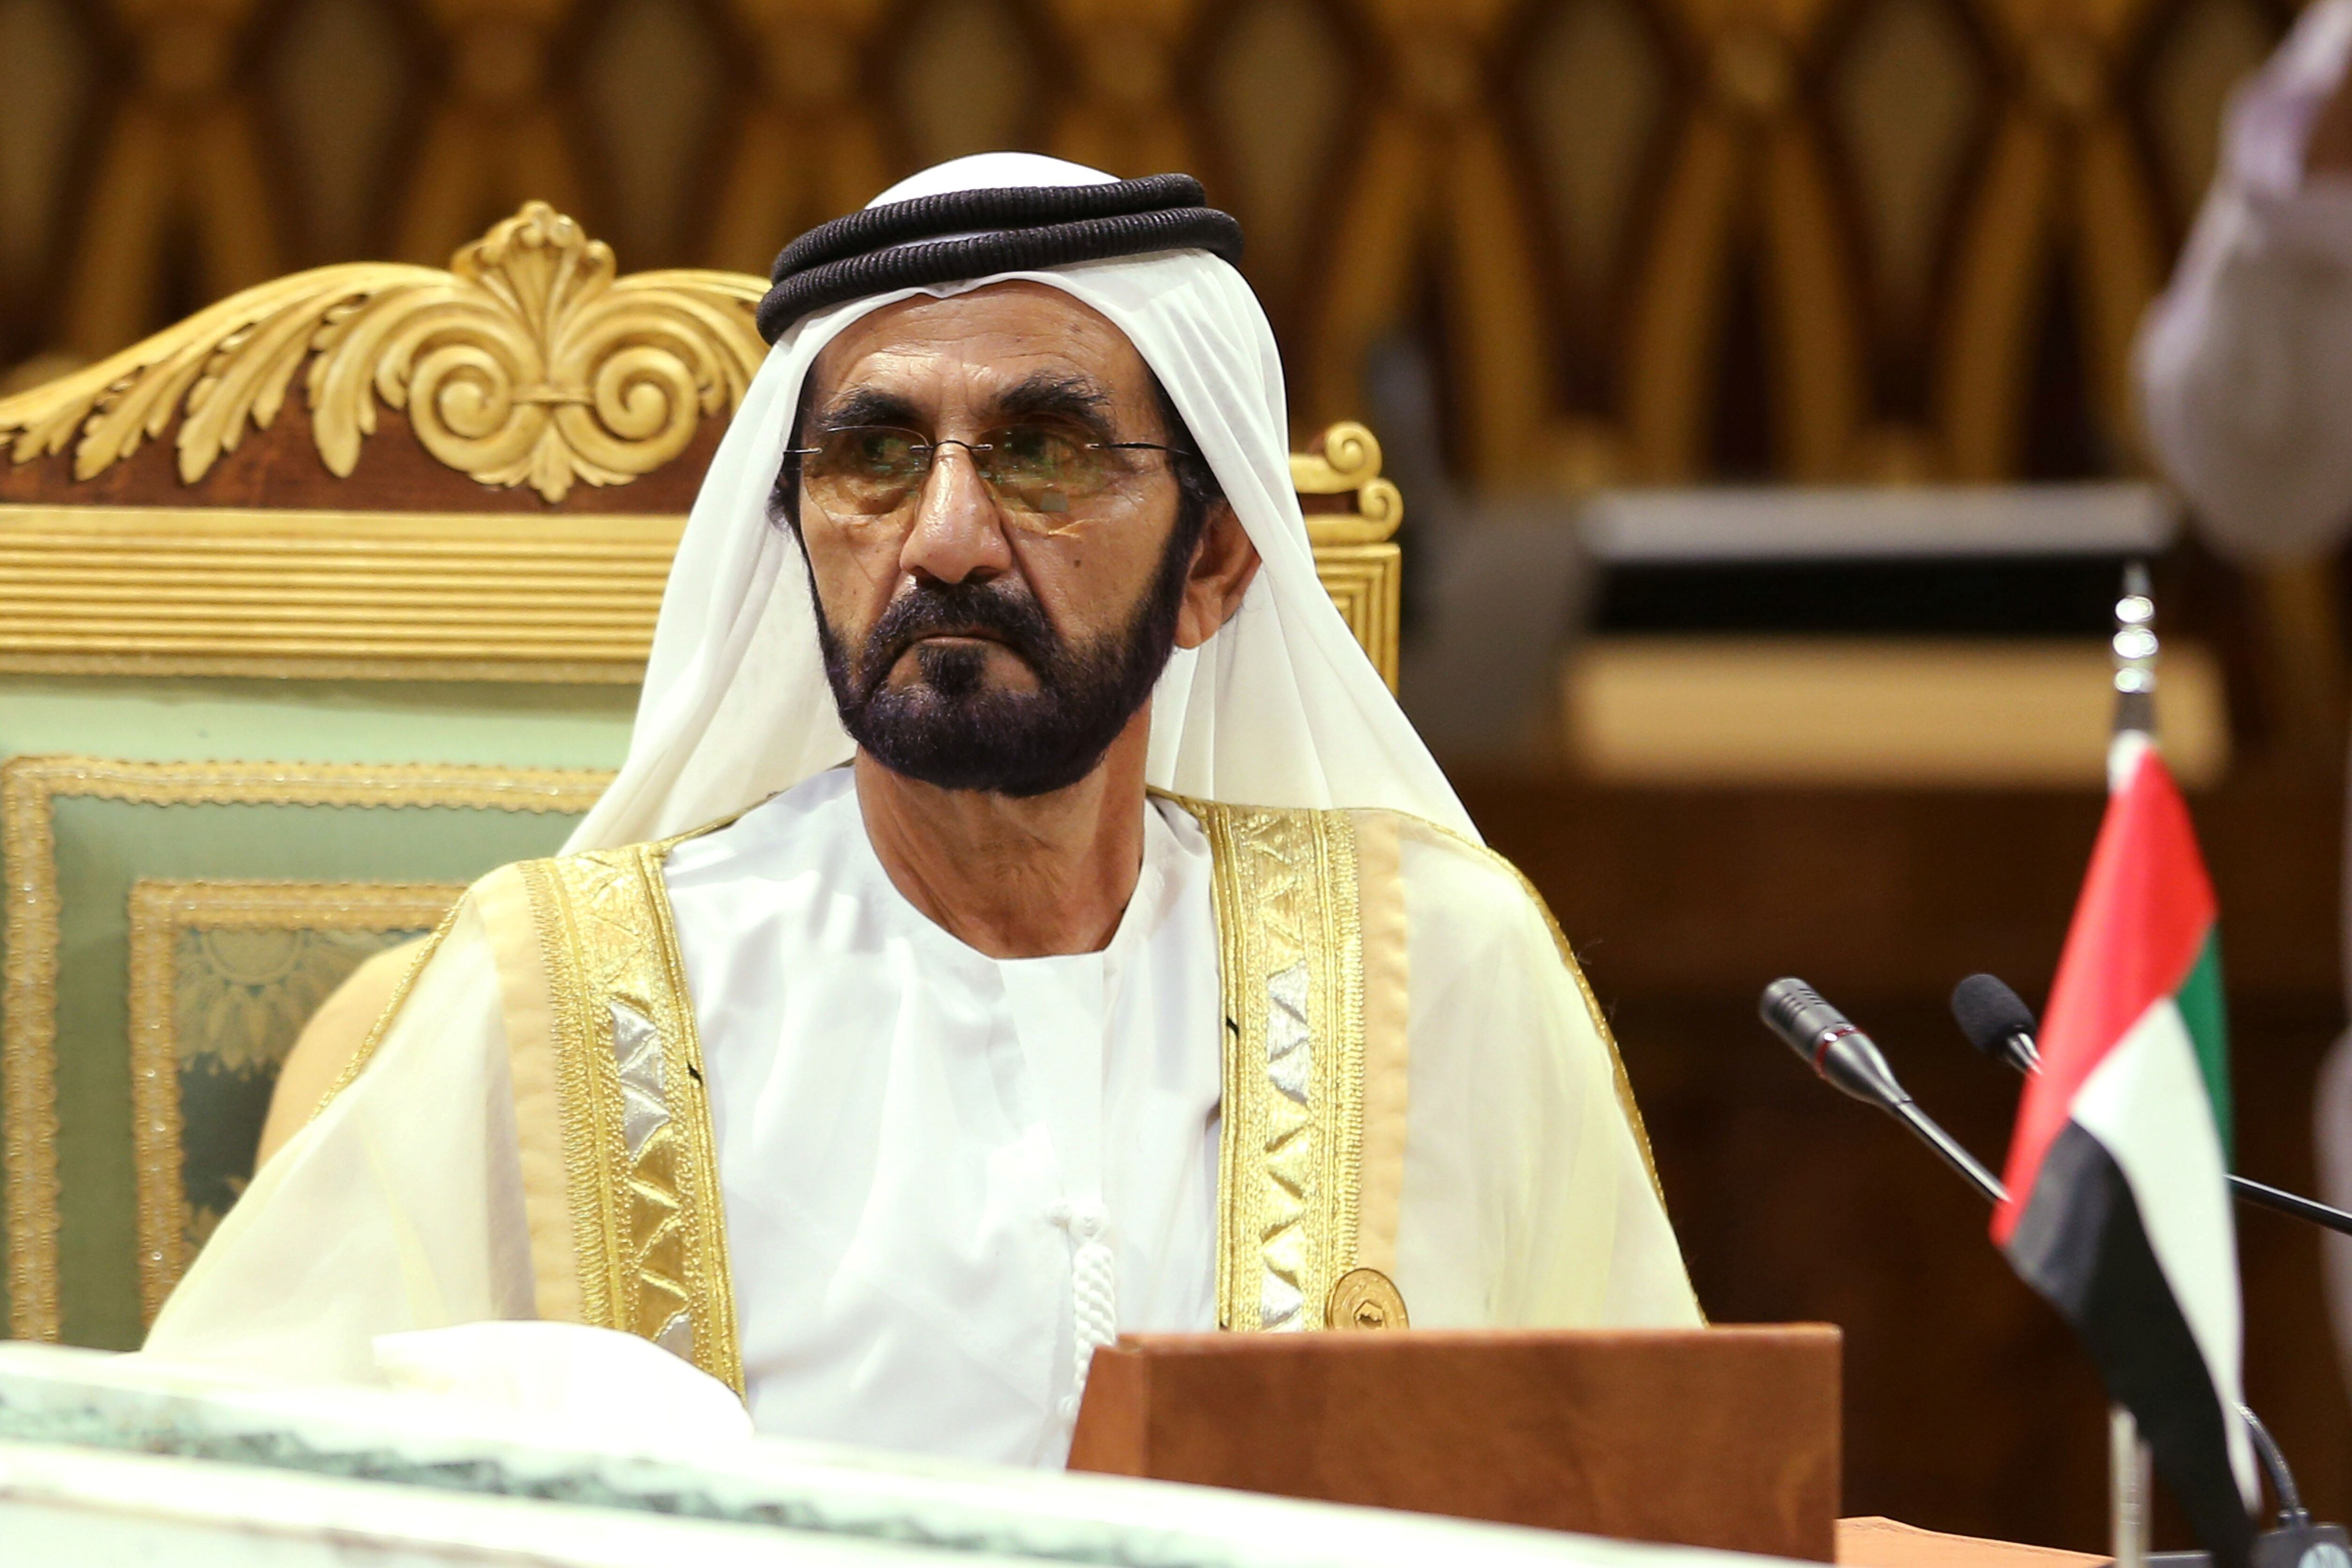 El primer ministro y vicepresidente de los Emiratos Árabes Unidos y gobernante de Dubai, el jeque Mohammed bin Rashid al-Maktoum, asiste a la 40a Cumbre del Consejo de Cooperación del Golfo (CCG) en Riad, Arabia Saudita, 10 de diciembre de 2019 (Reuters)